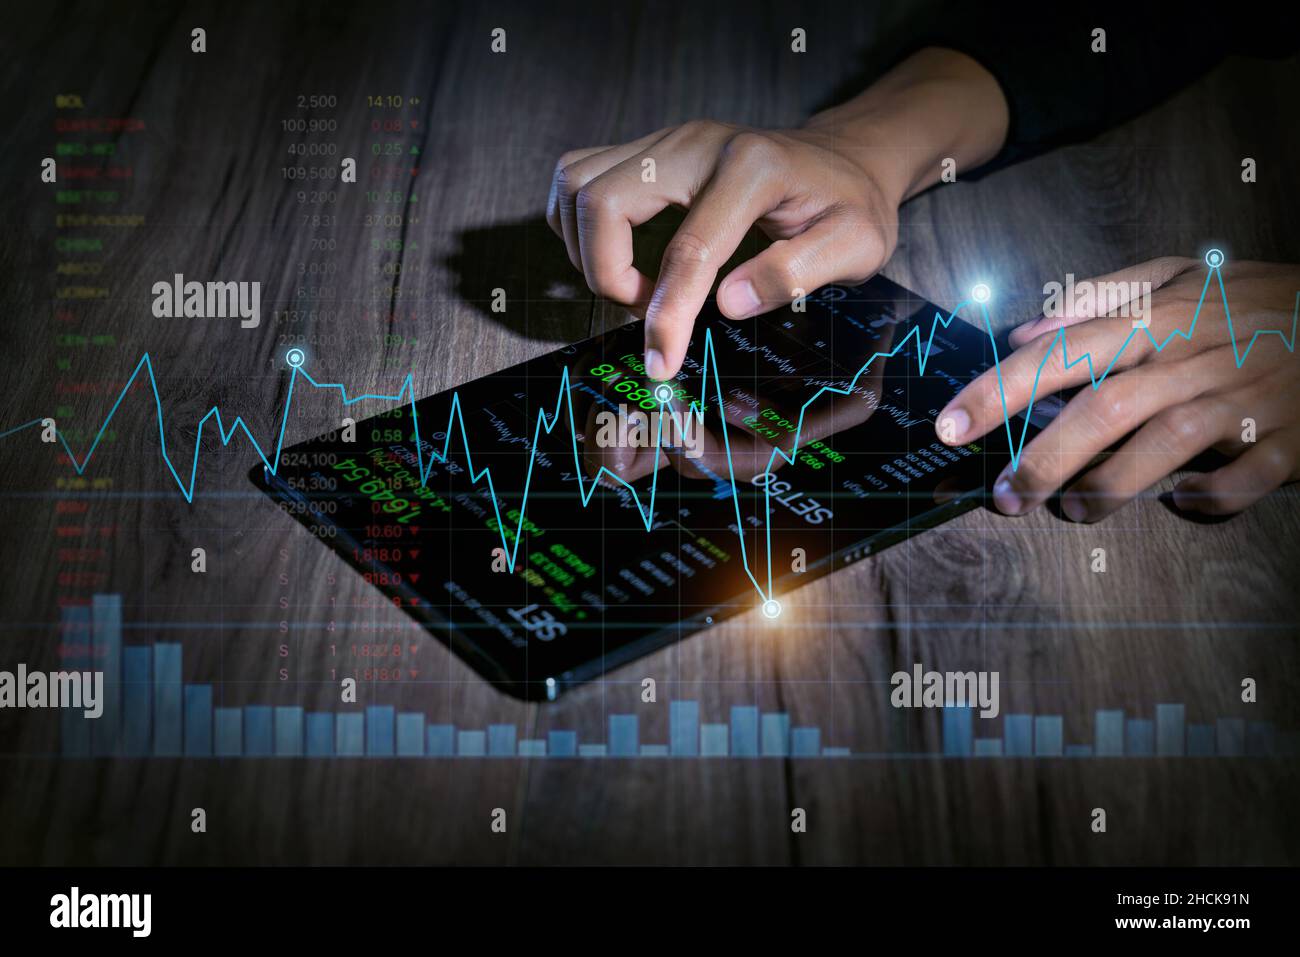 Homme d'affaires analysant les statistiques financières affichées sur l'écran de la tablette.Concept d'analyse commerciale et de technologie financière. Banque D'Images